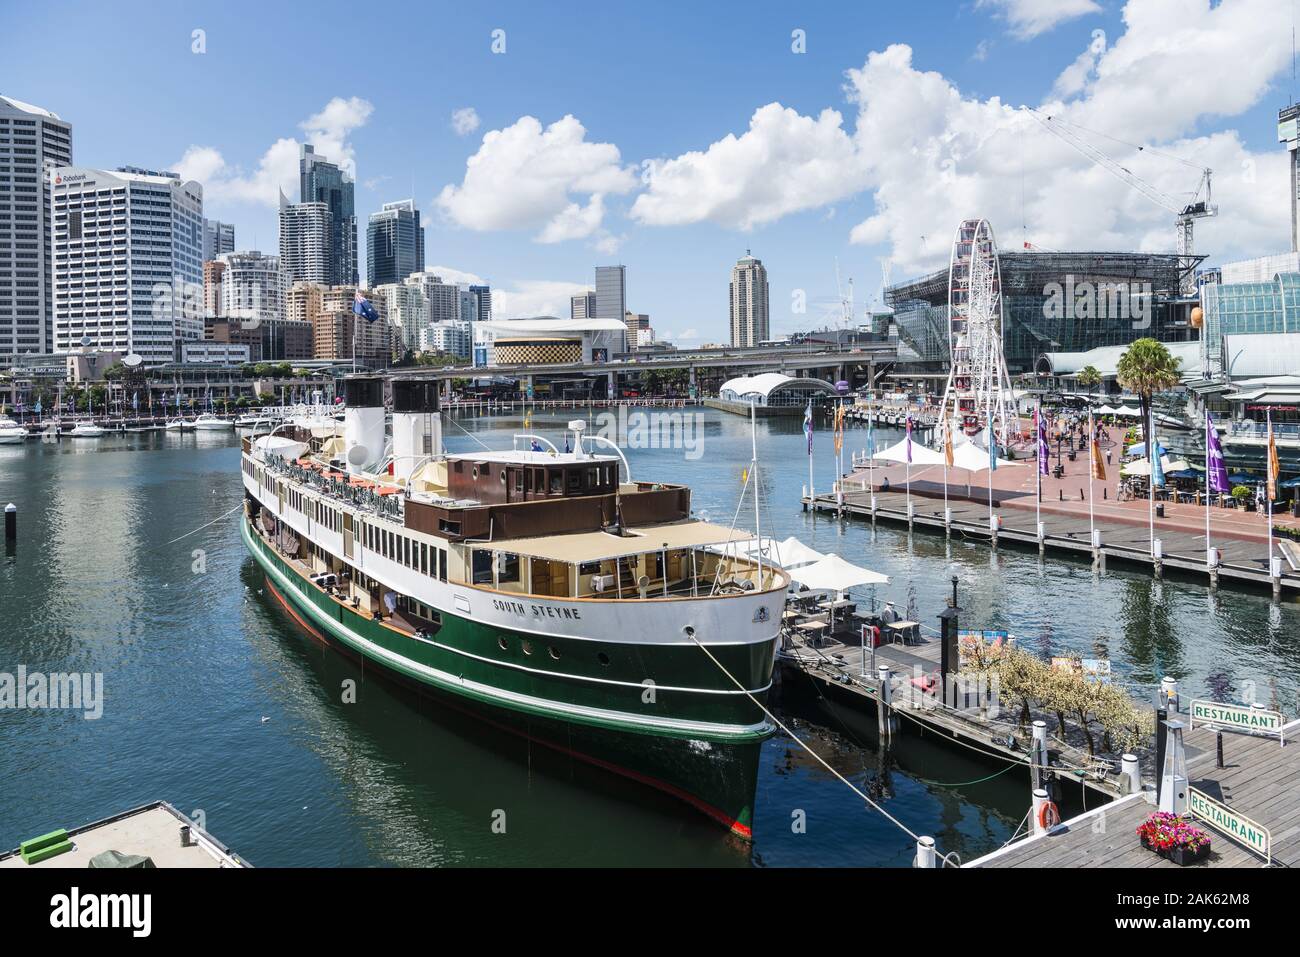 Sydney/Darling Harbour: Restaurantschiff 'South Steyne', Australien Osten | usage worldwide Stock Photo